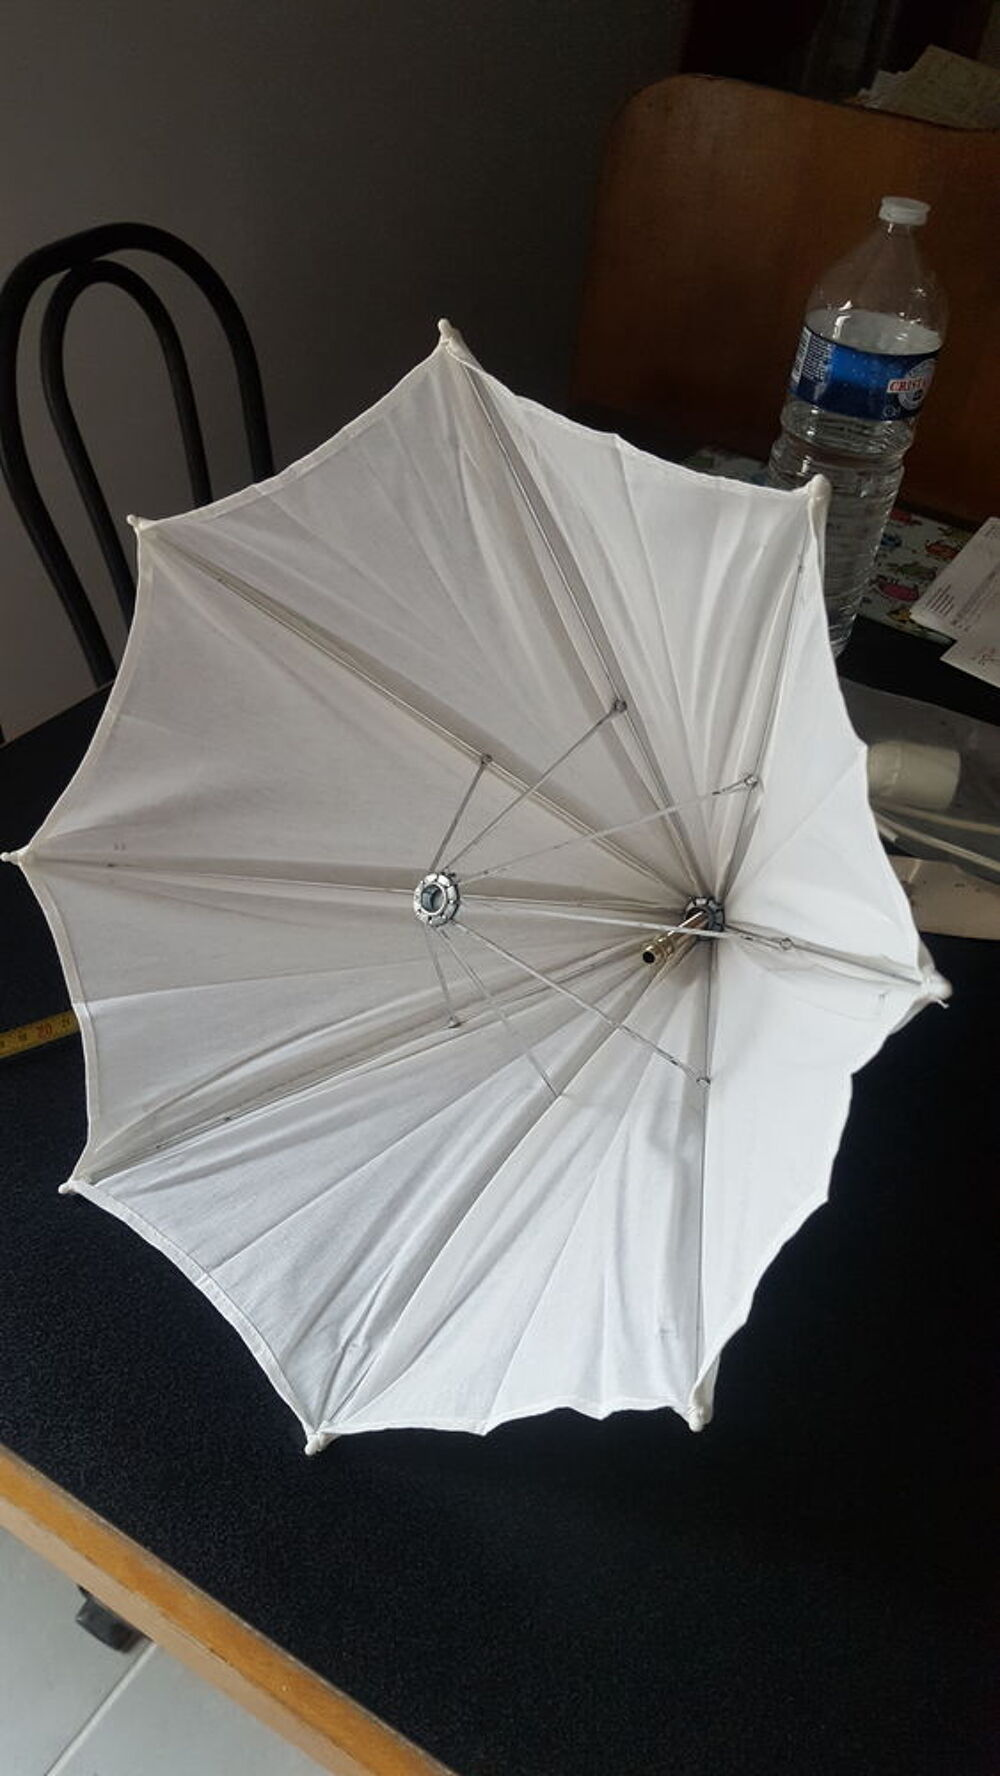 luminaire blanc en forme de parapluie
Dcoration